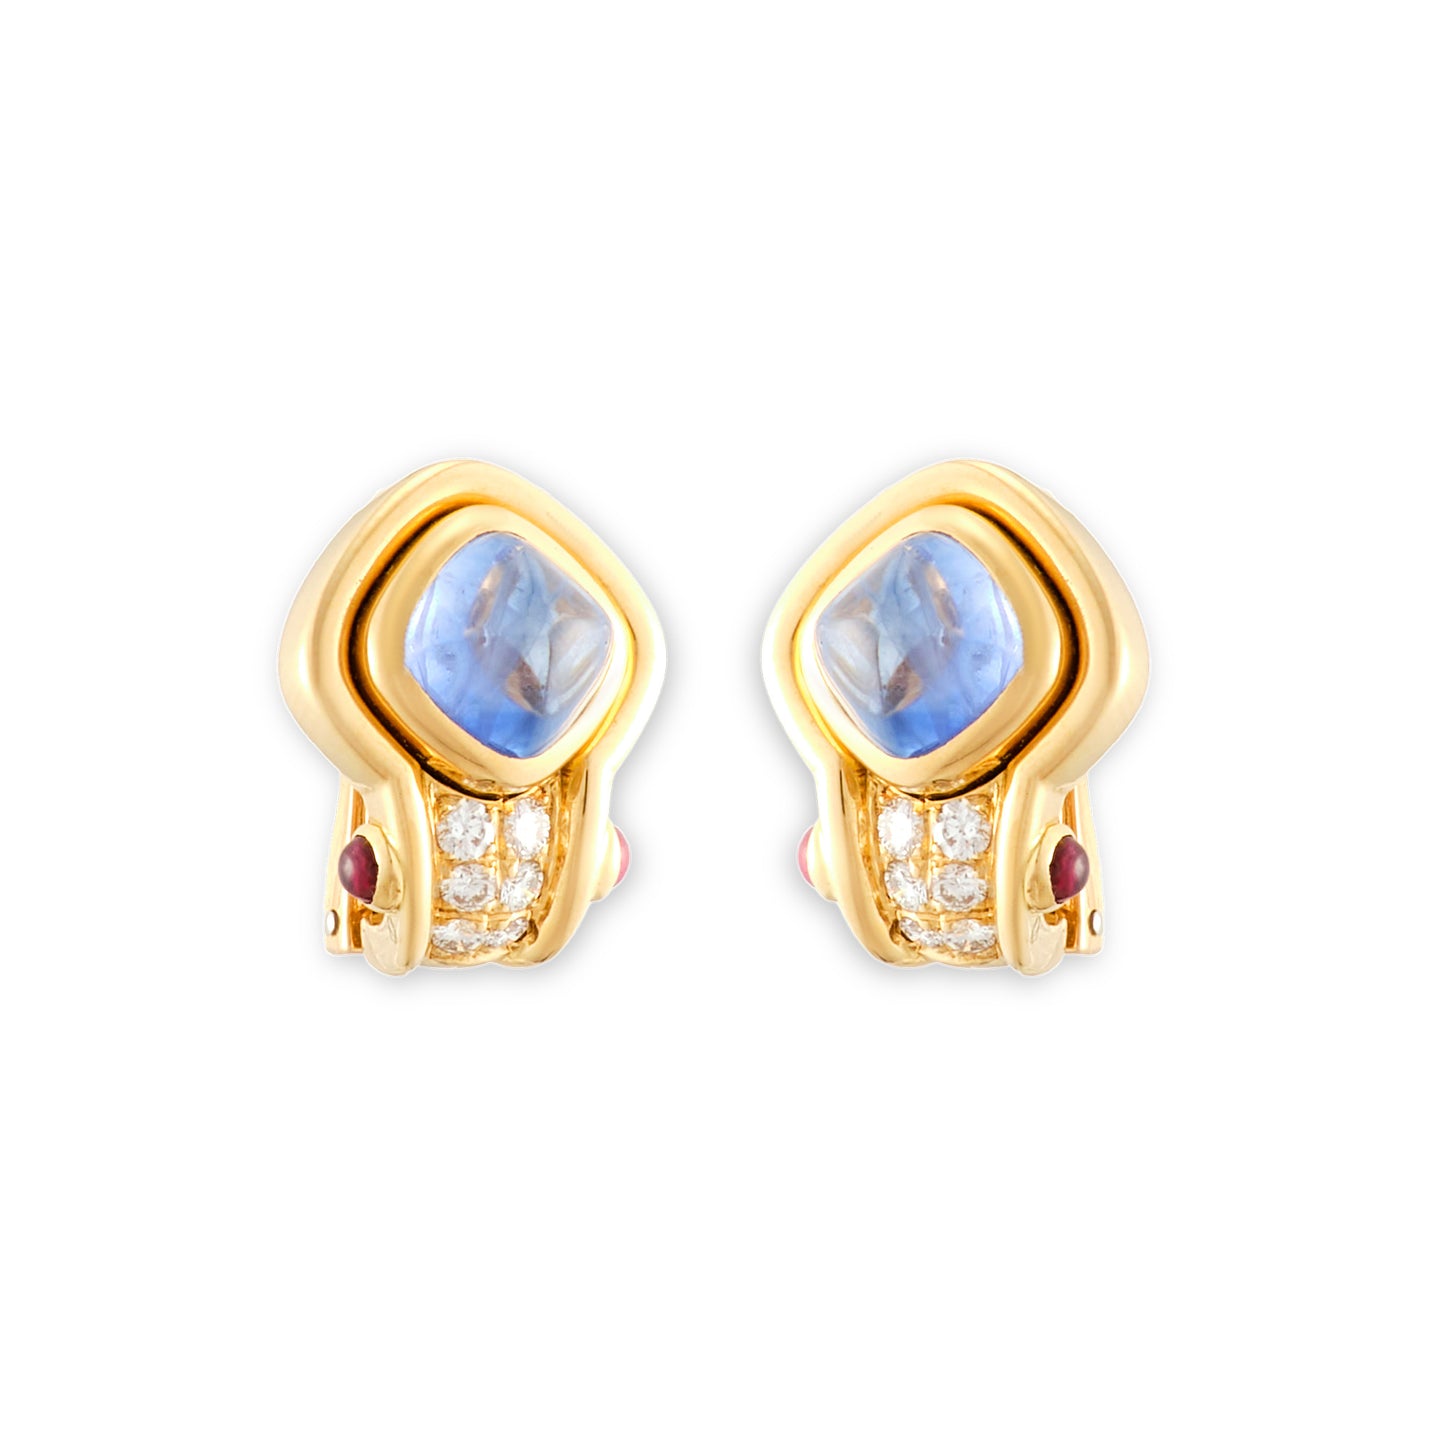 Kent Raible Sapphire Earrings